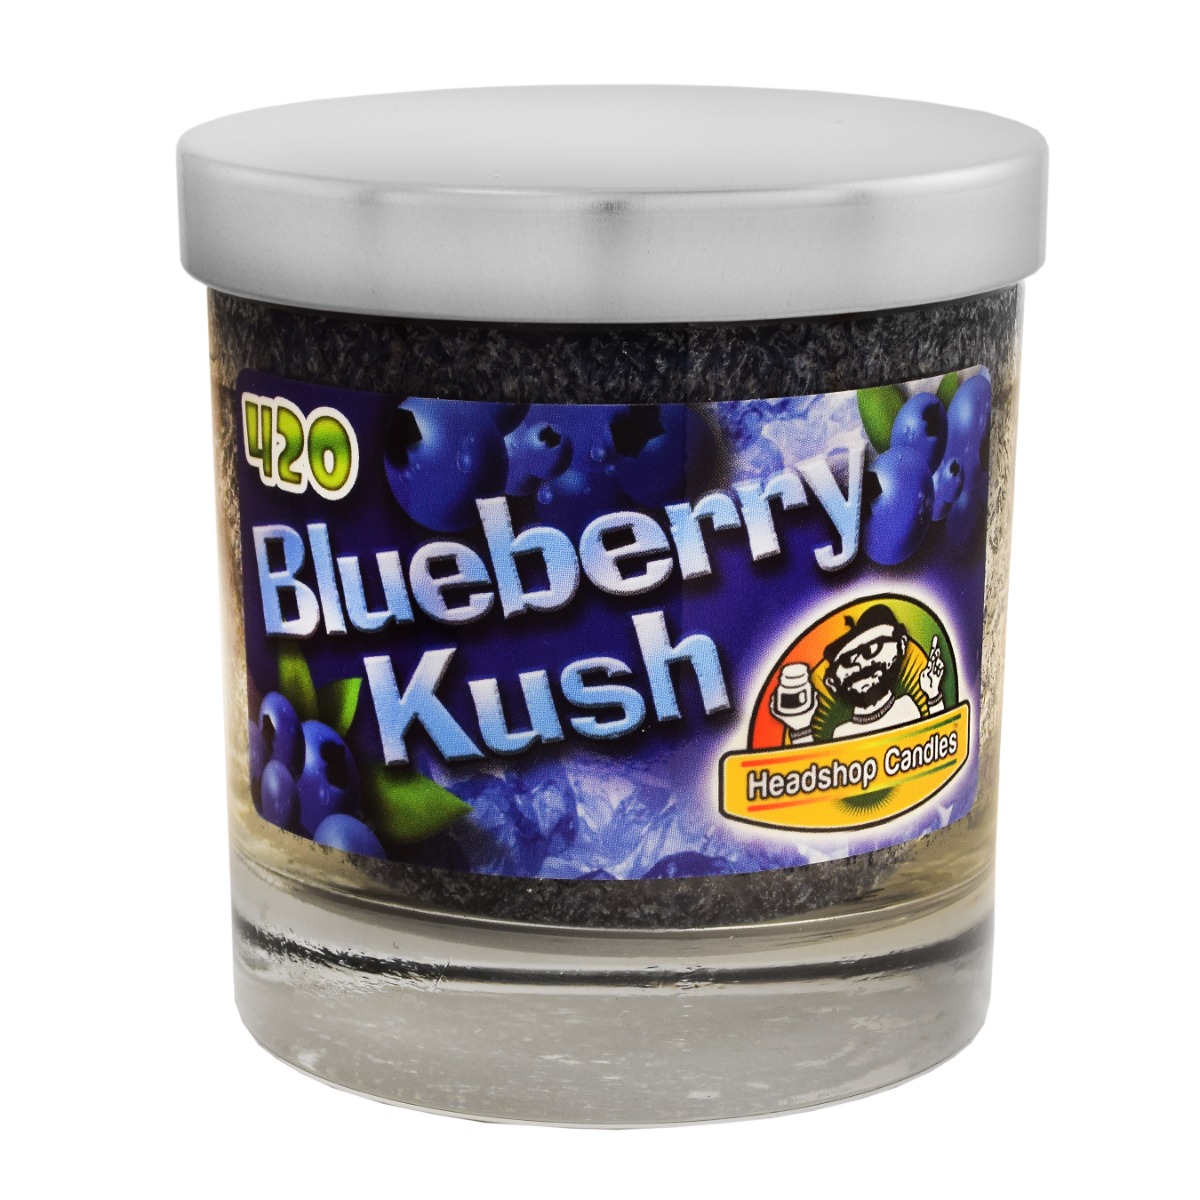 Headshop Candle Blueberry Kush